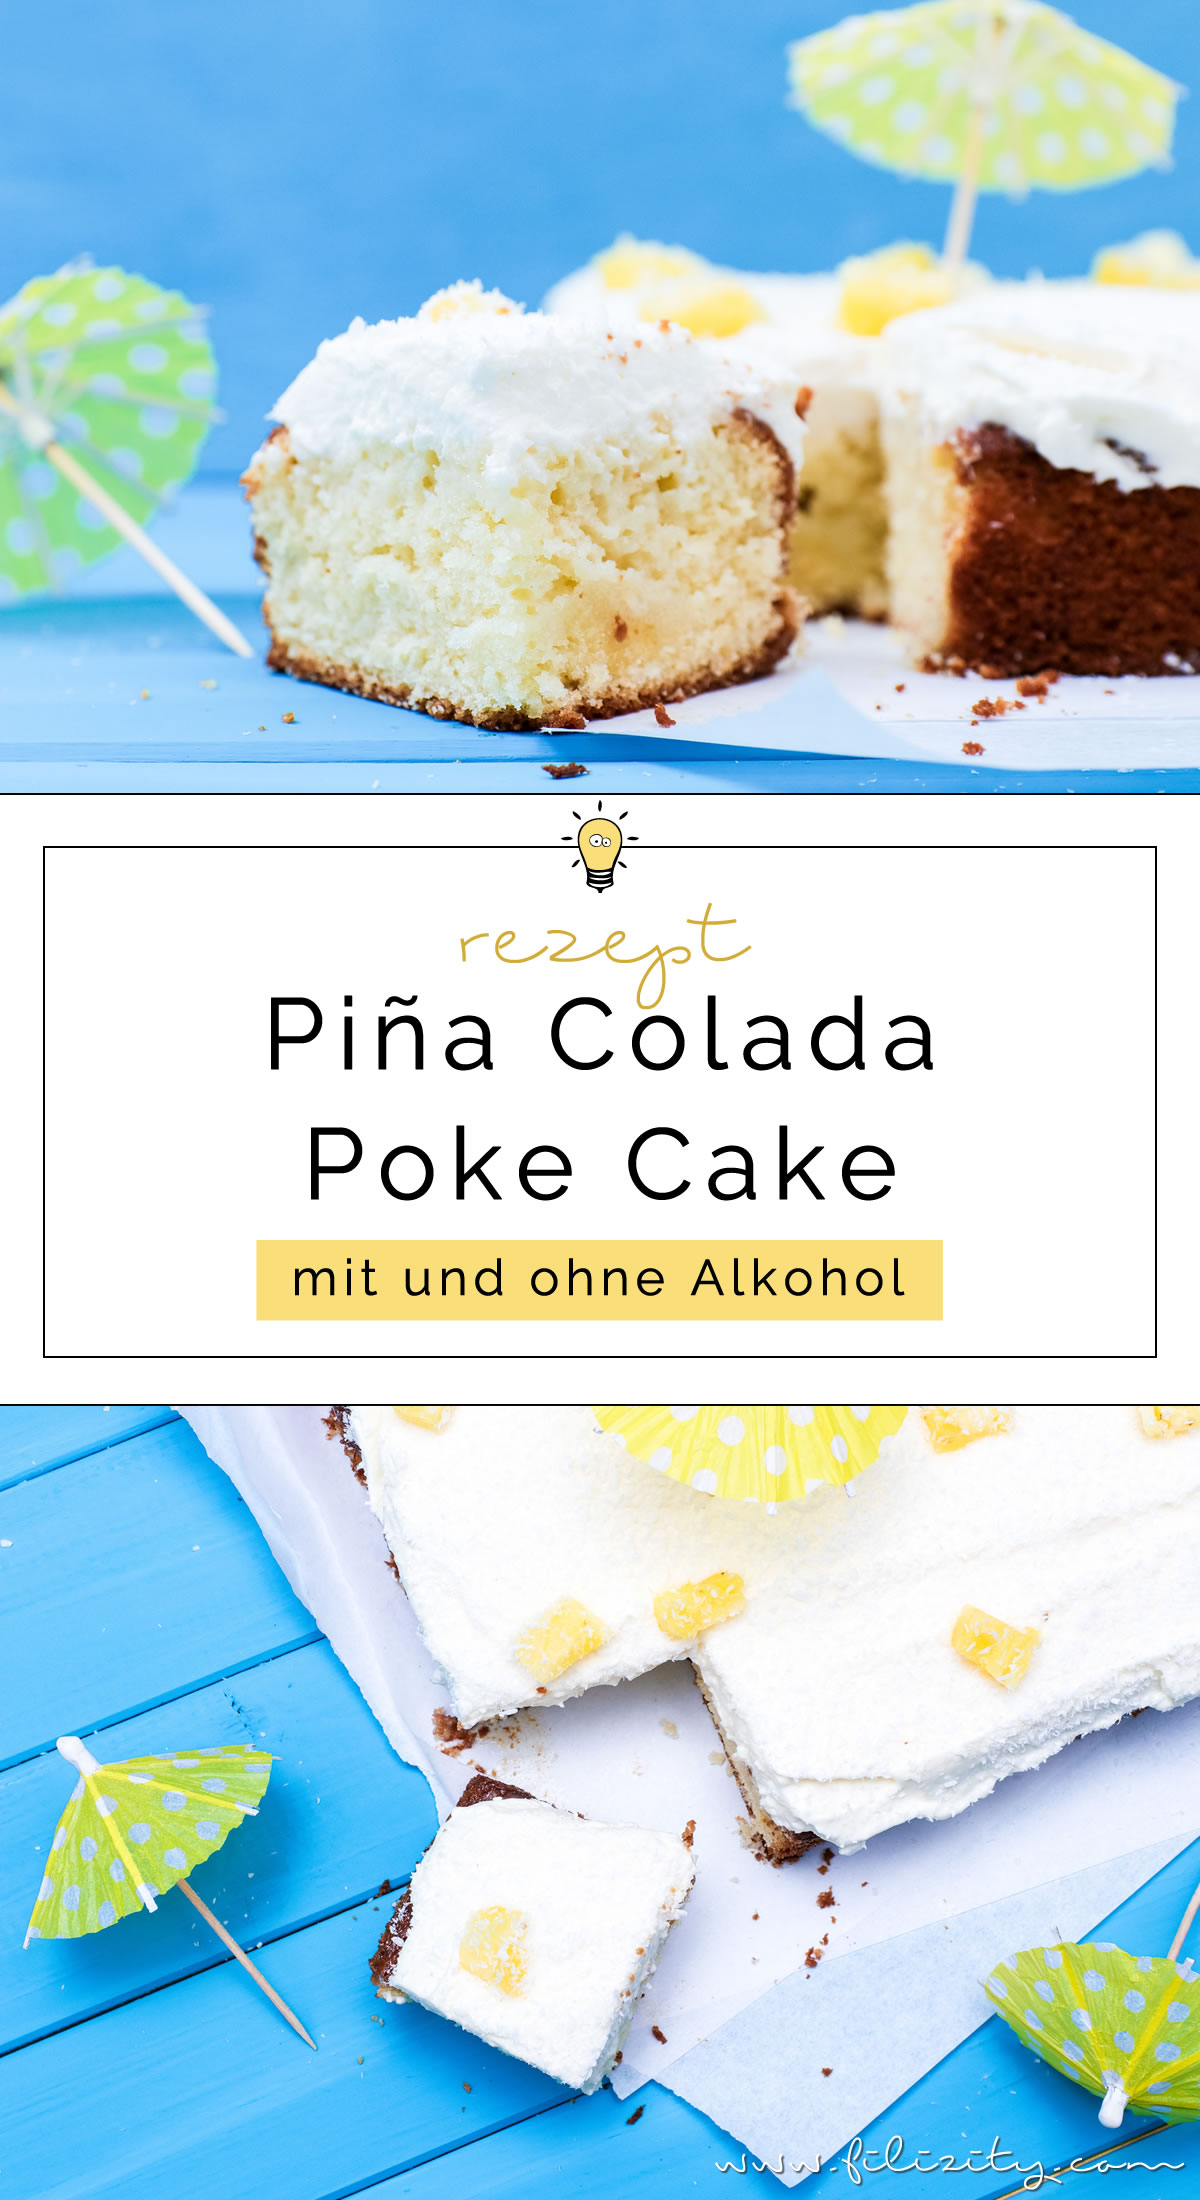 Rezept für Piña Colada Poke Cake | Die Torten-Variante des Cocktail Klassikers | Pina Colada Torte mit oder ohne Alkohol | Filizity.com | Food-Blog aus dem Rheinland